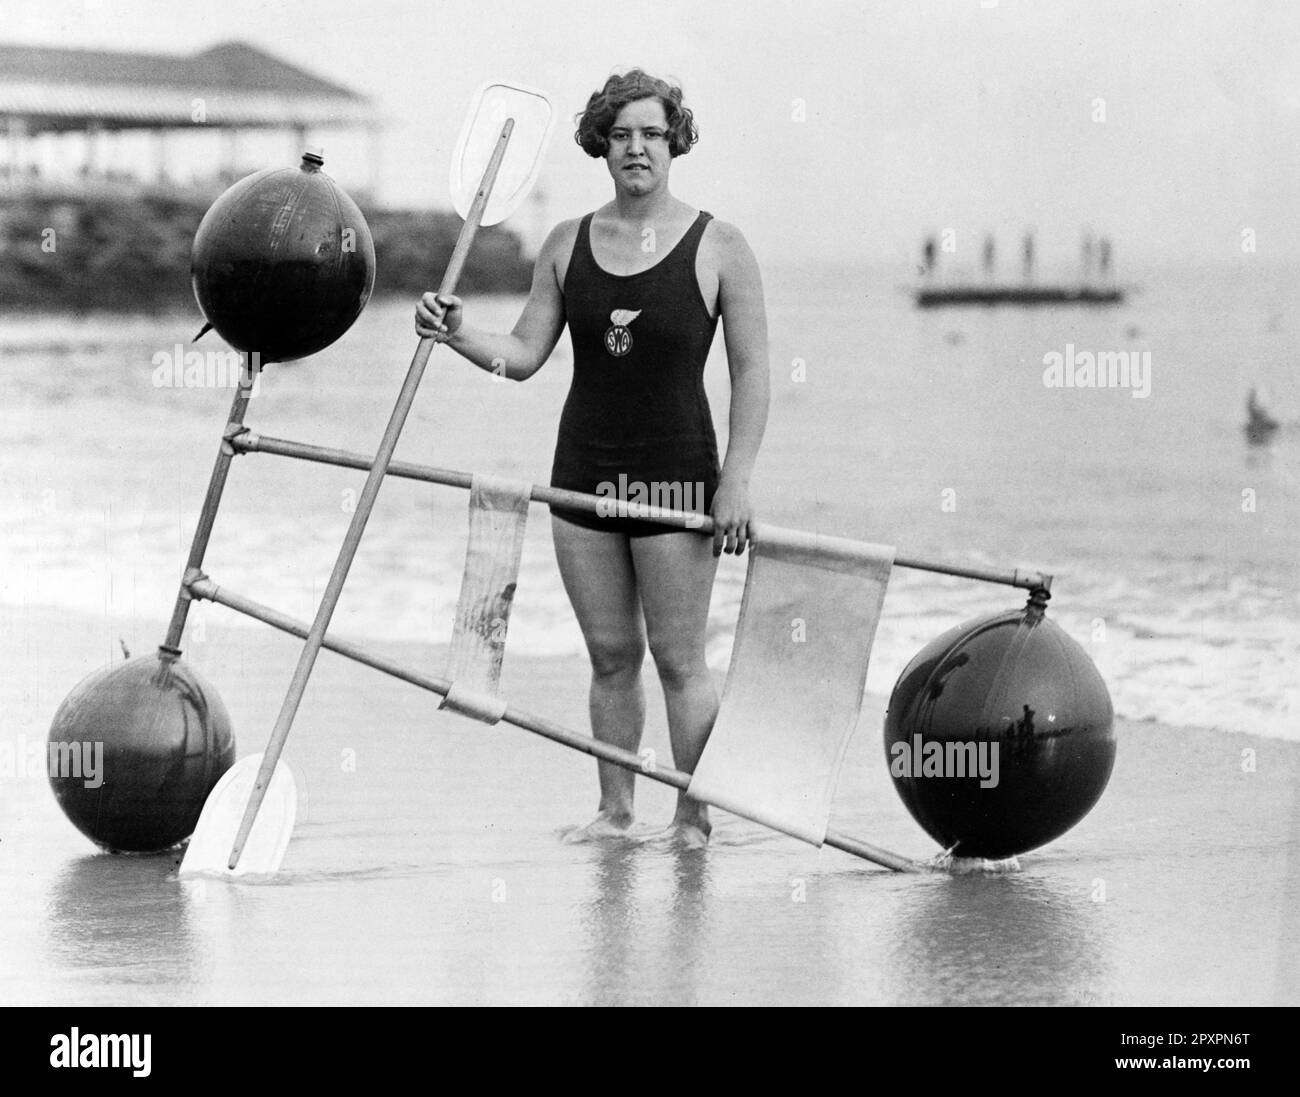 Gertrude Ederle. Portrait des amerikanischen Schwimmers und Olympiasiegers Gertrude Caroline Ederle (1905-2003) von Underwood und Underwood, 1925. Im August 1926 schwamm sie als erste Frau über den Ärmelkanal. Stockfoto